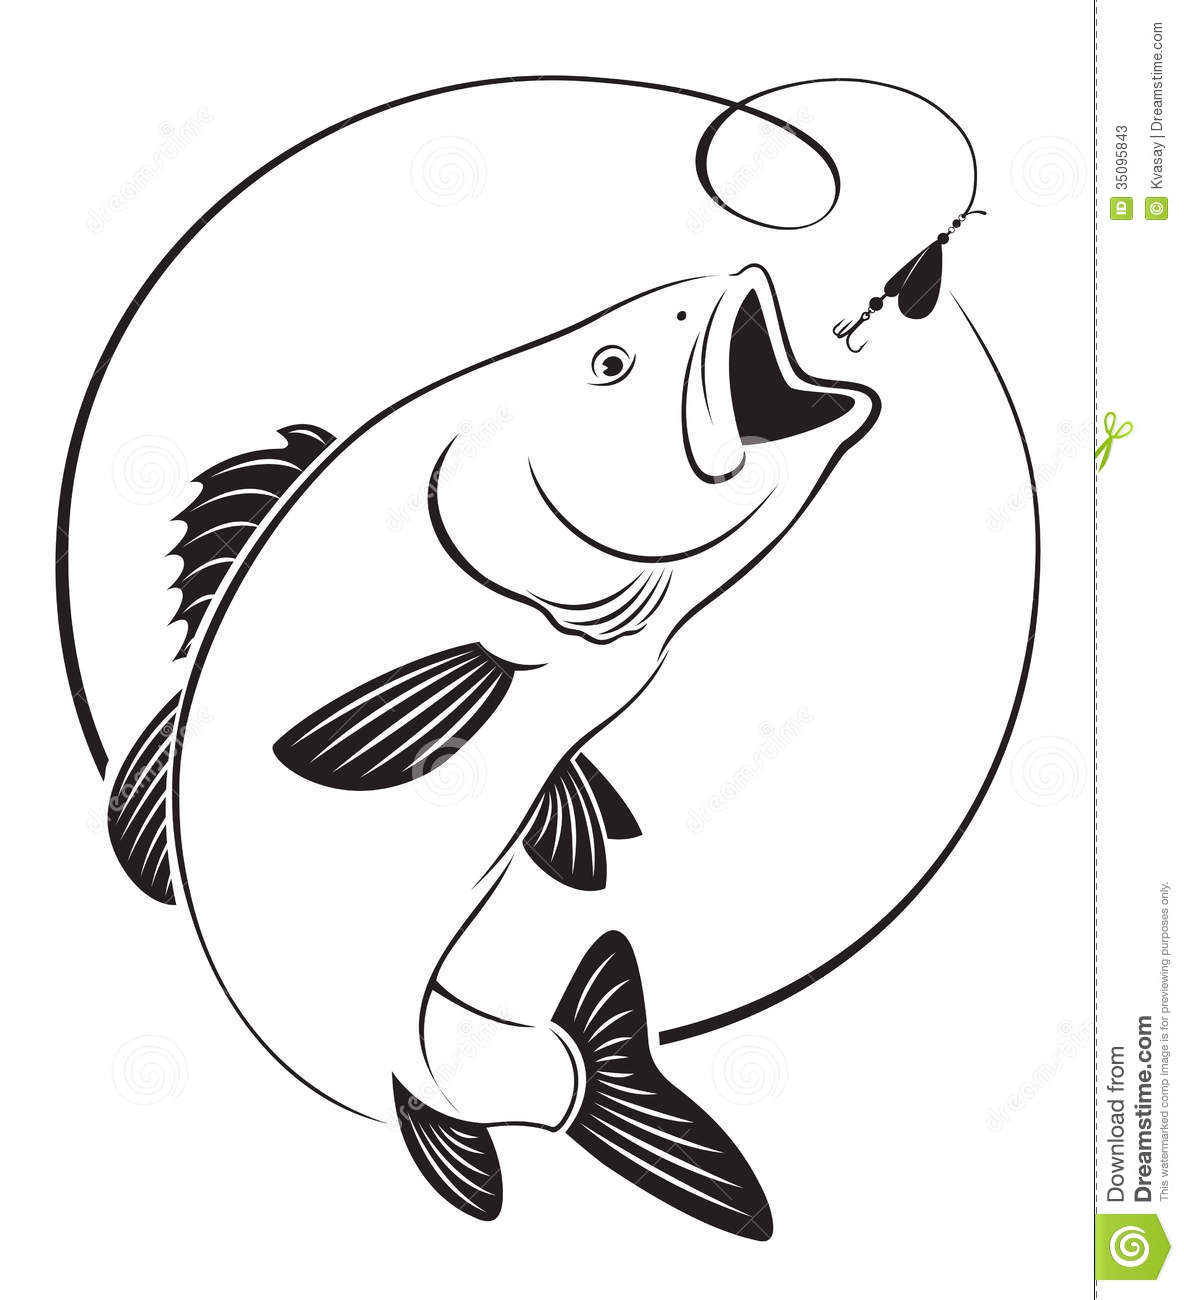 Fish bass. Fish bass. Bass Fish Wireframe Clip Art